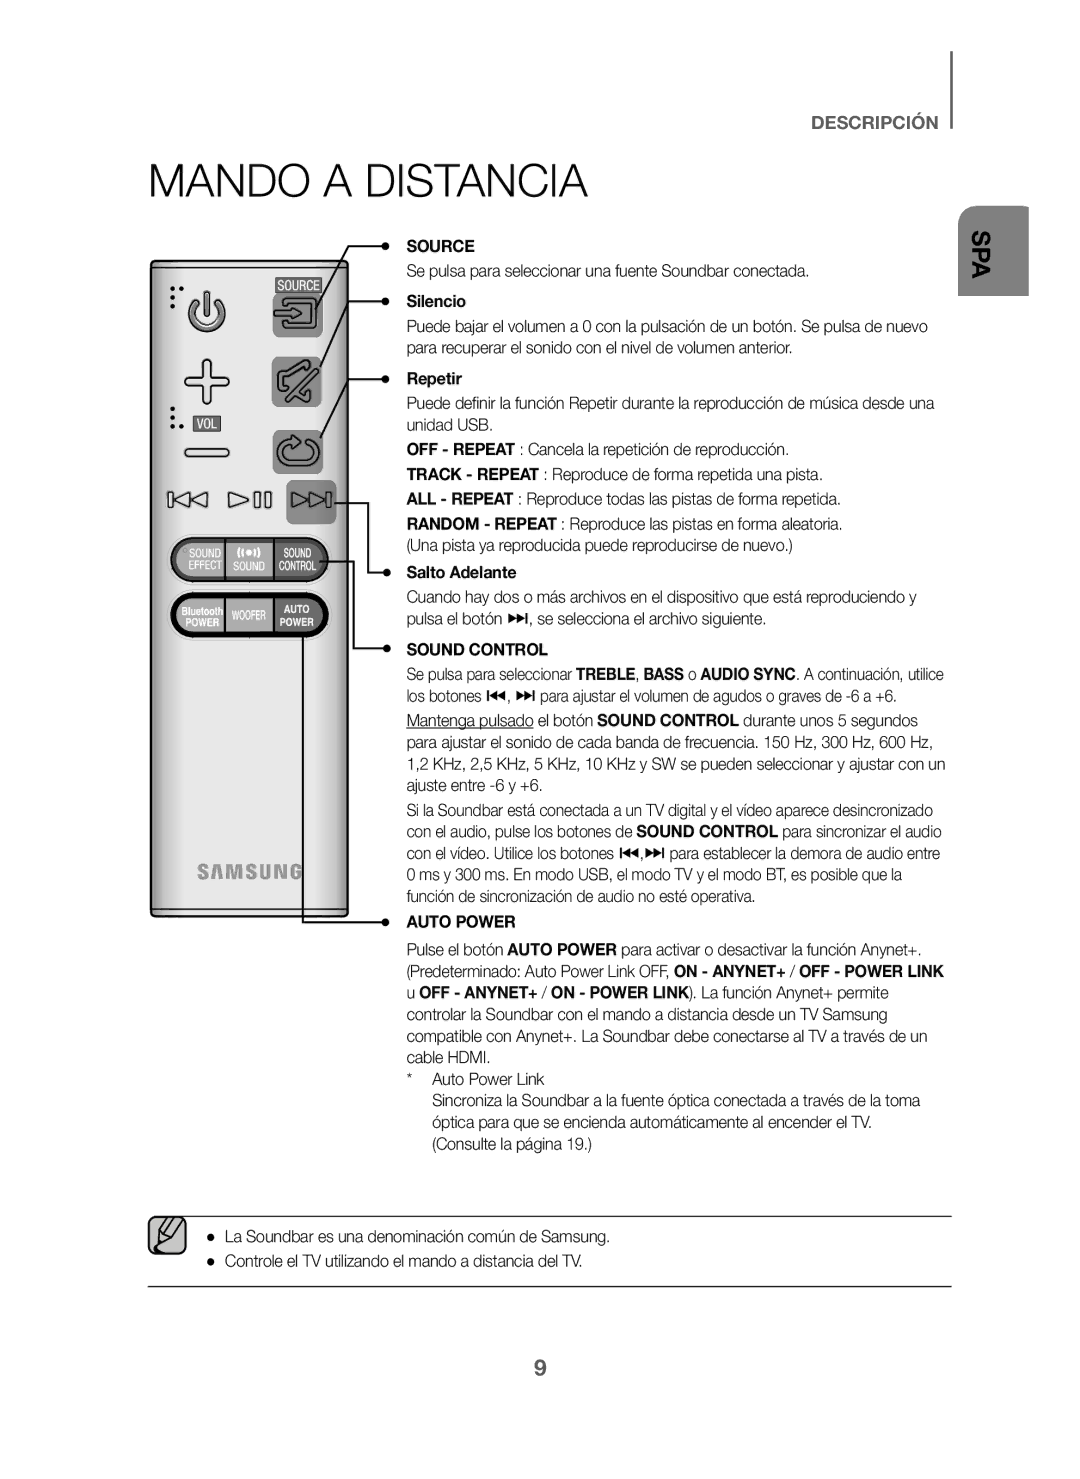 Samsung HW-J6000/ZF manual Mando a Distancia, Se pulsa para seleccionar una fuente Soundbar conectada, Silencio, Repetir 